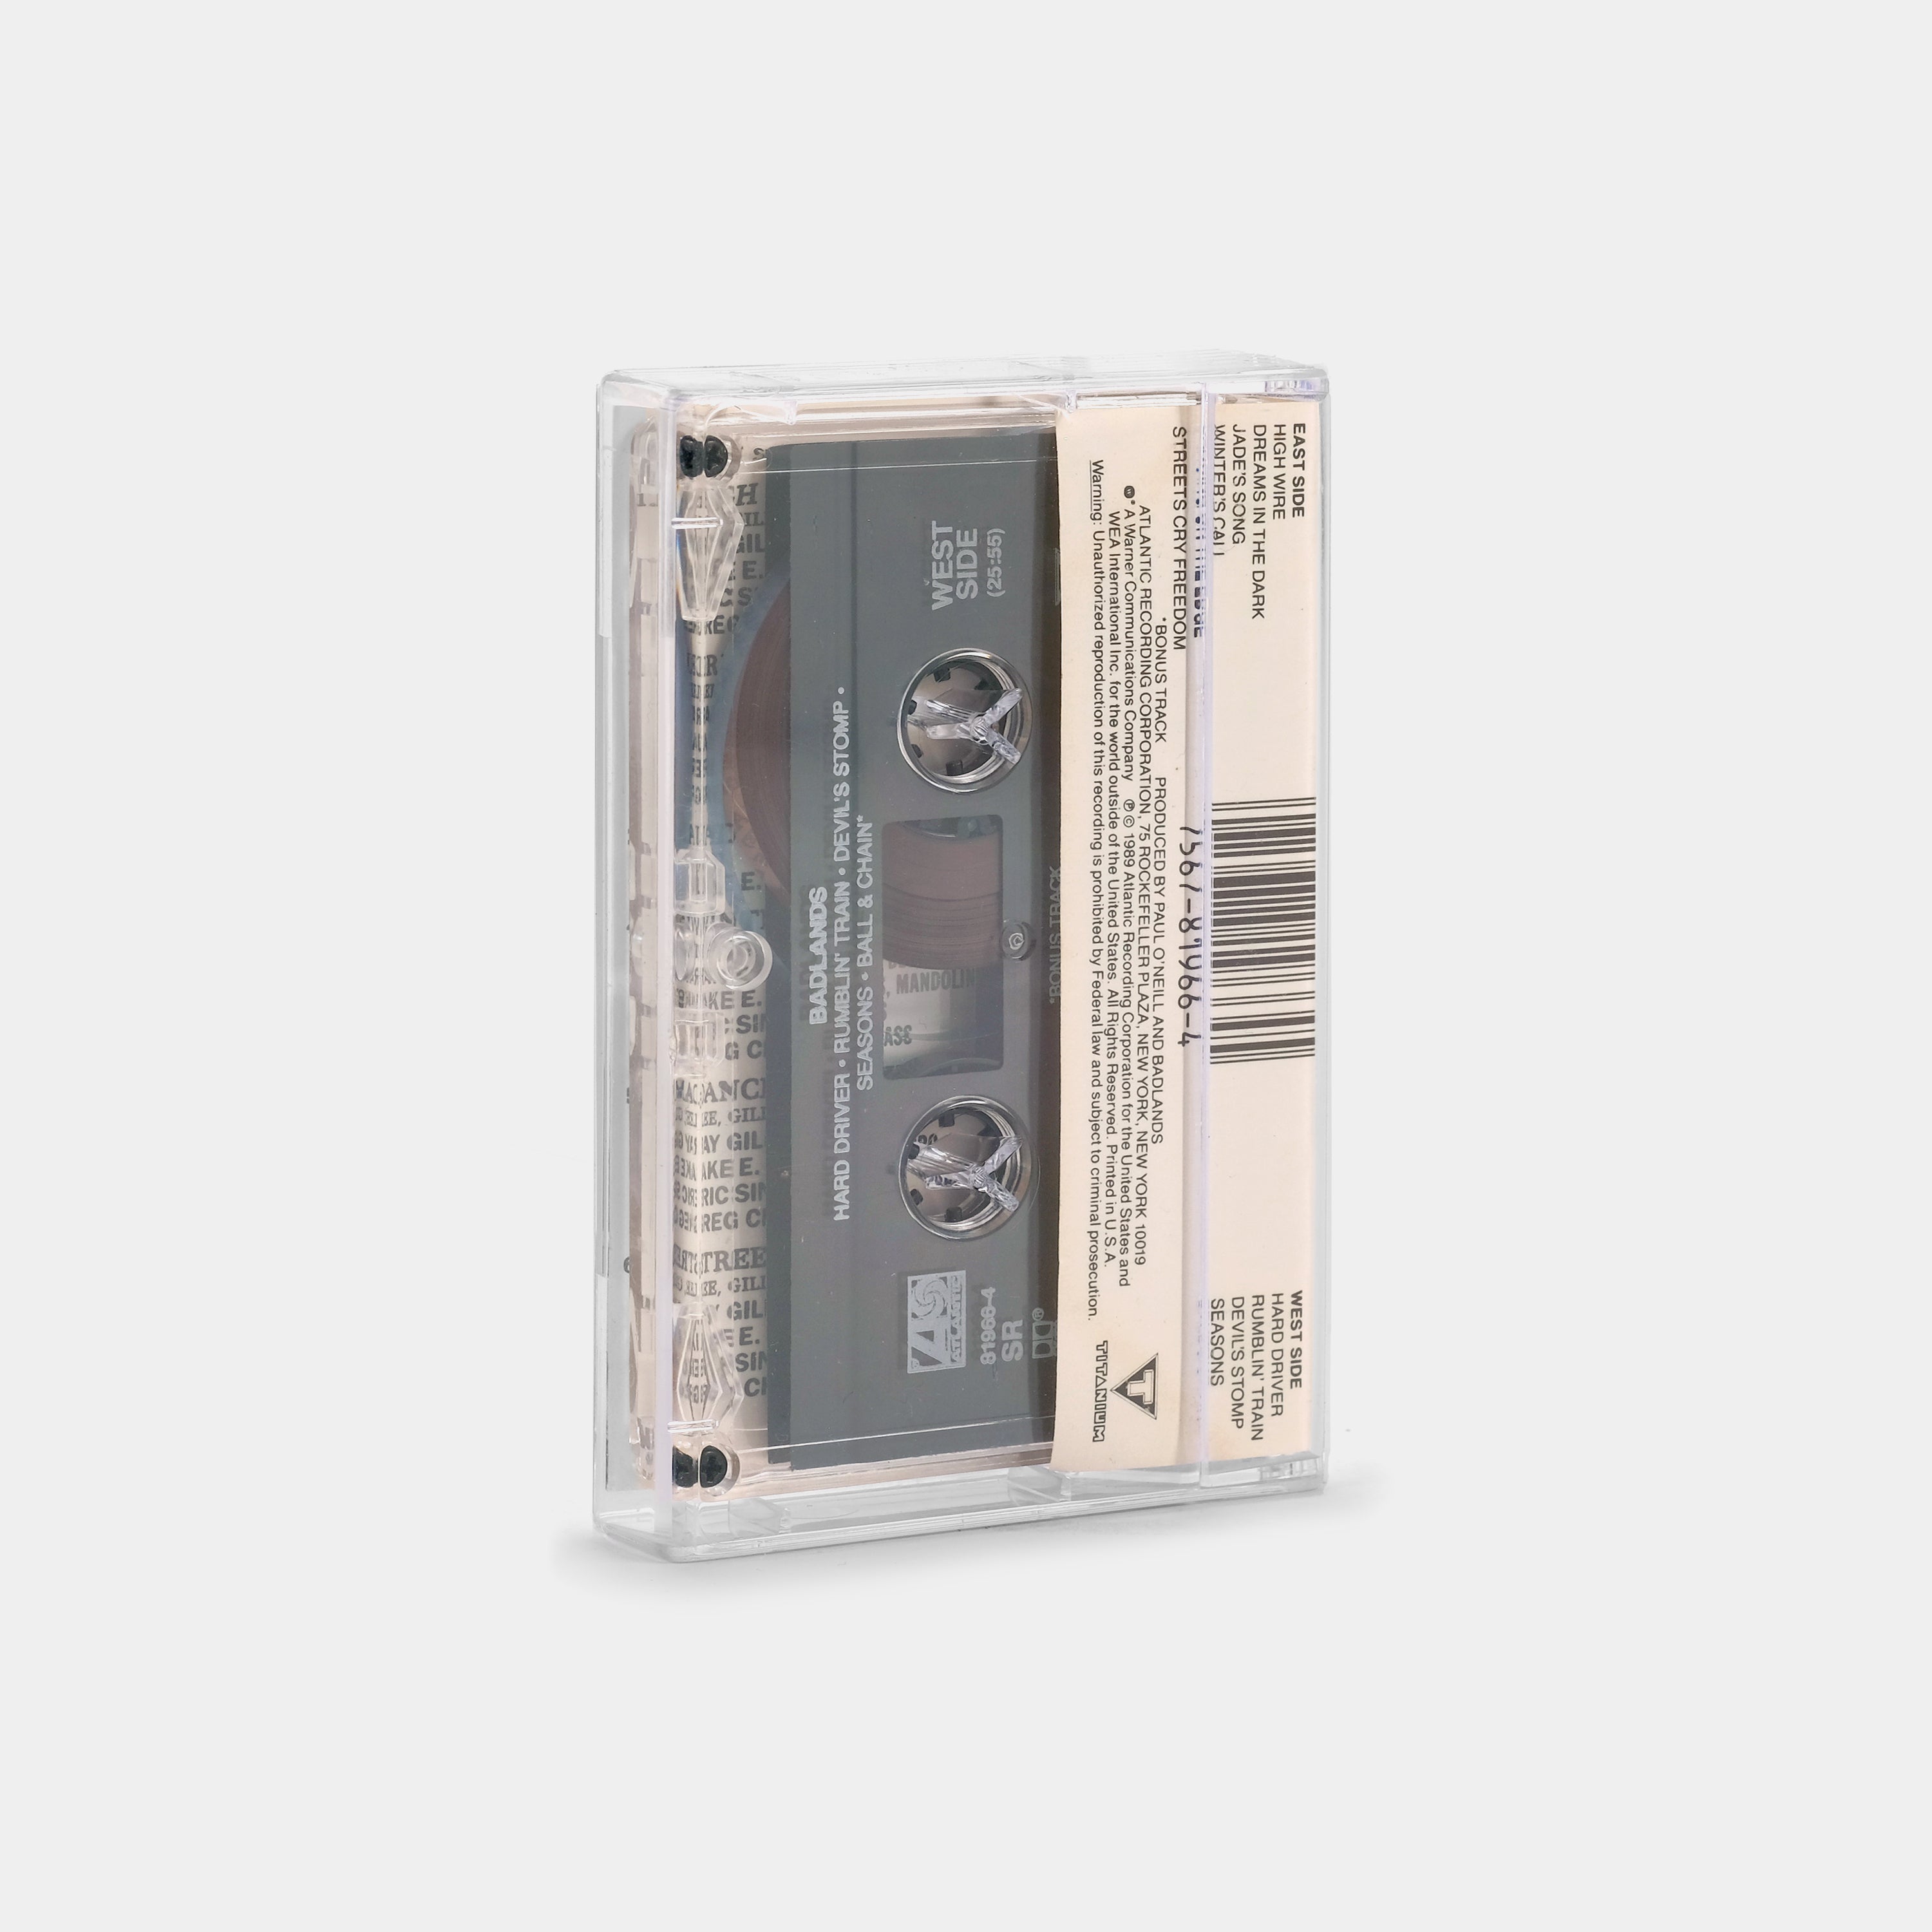 Badlands - Badlands Cassette Tape